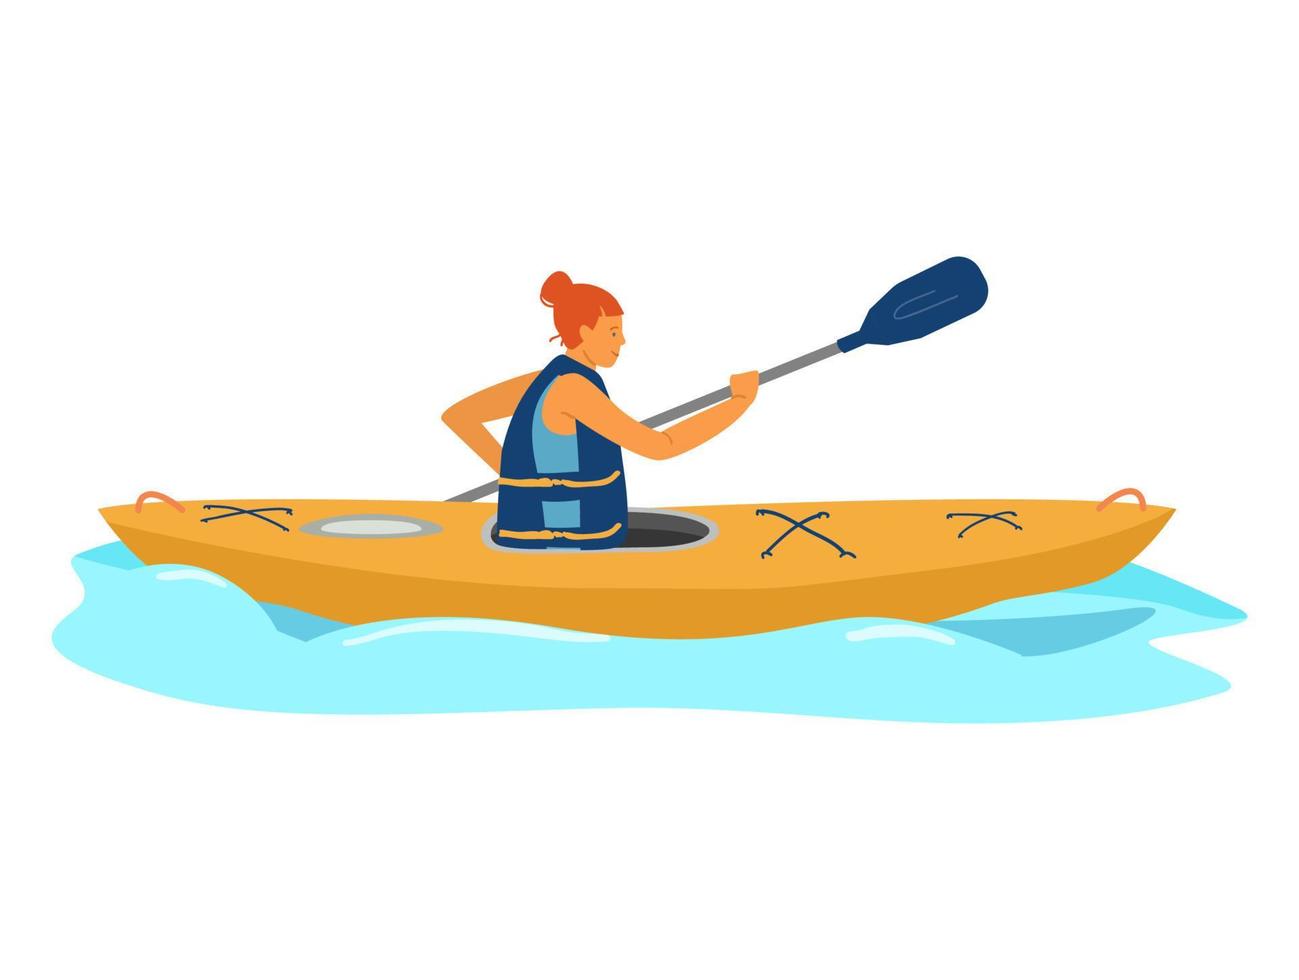 ragazza dai capelli rossi in giubbotto di salvataggio con pagaia in kayak sulle onde. stile di vita attivo. isolato su bianco. illustrazione vettoriale piatta.